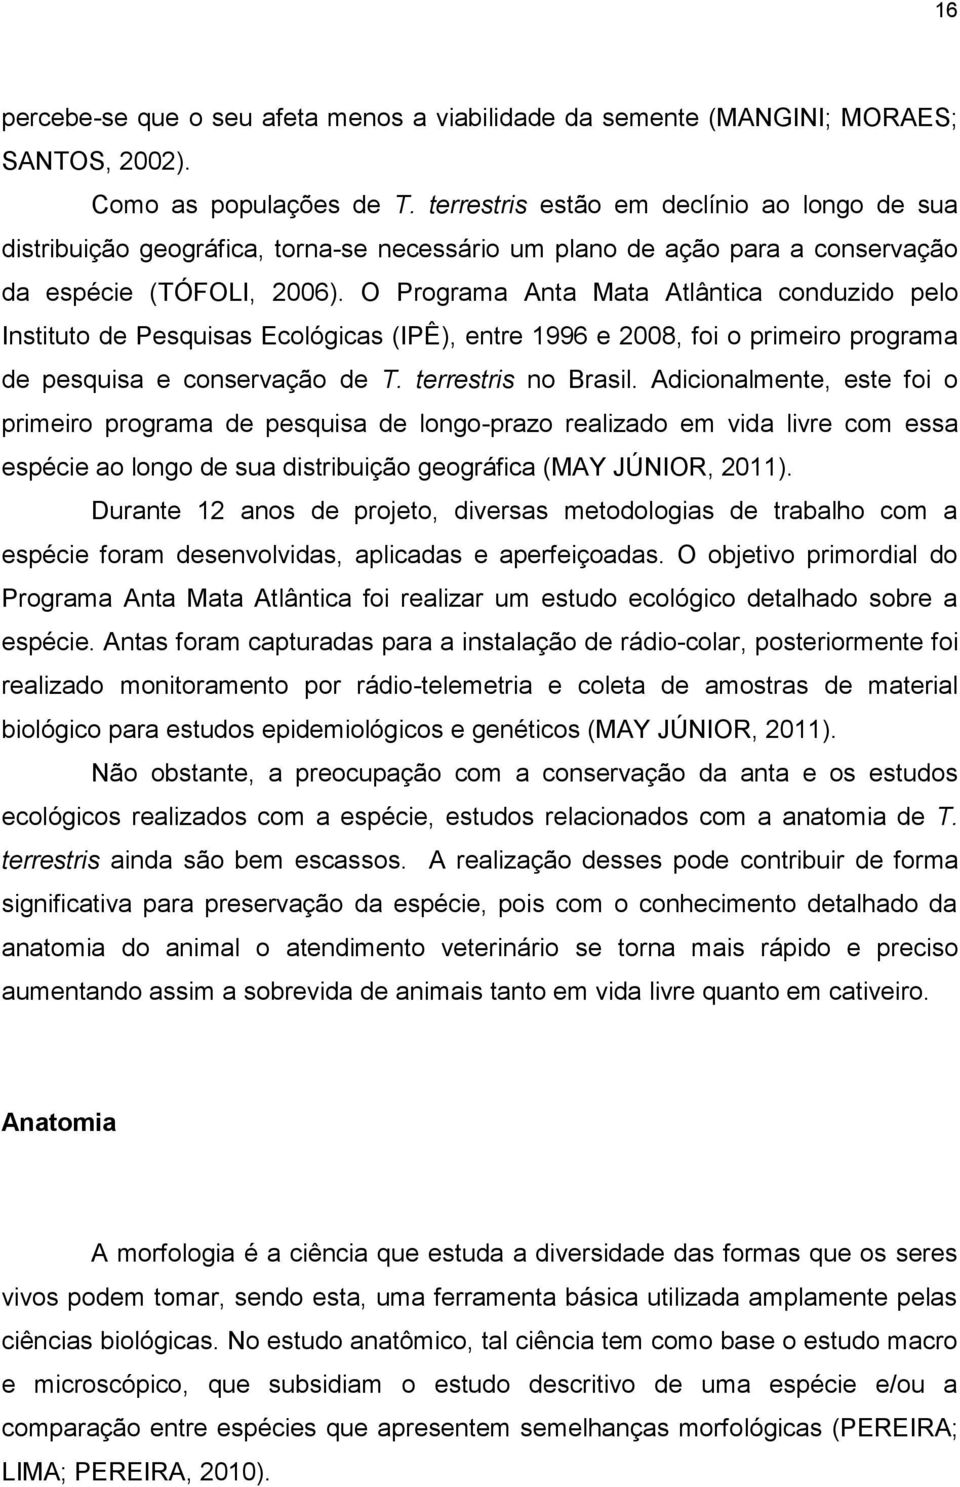 O Programa Anta Mata Atlântica conduzido pelo Instituto de Pesquisas Ecológicas (IPÊ), entre 1996 e 2008, foi o primeiro programa de pesquisa e conservação de T. terrestris no Brasil.